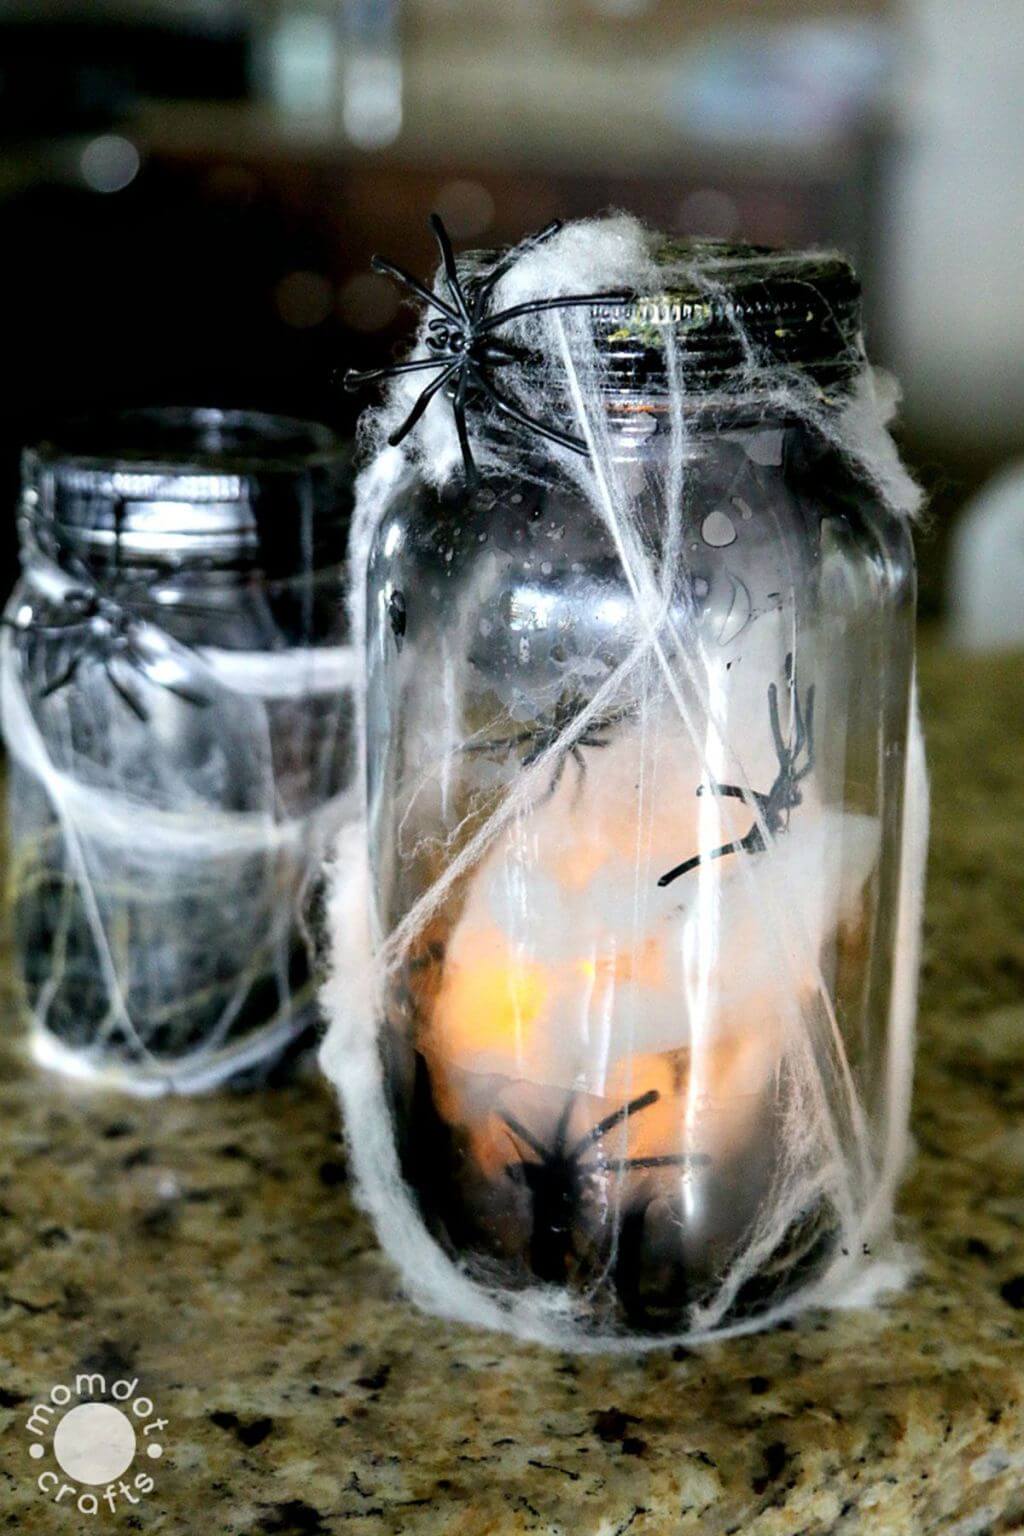 15 Super Spooky DIY Halloween Mason Jar Crafts You'll Enjoy Crafting